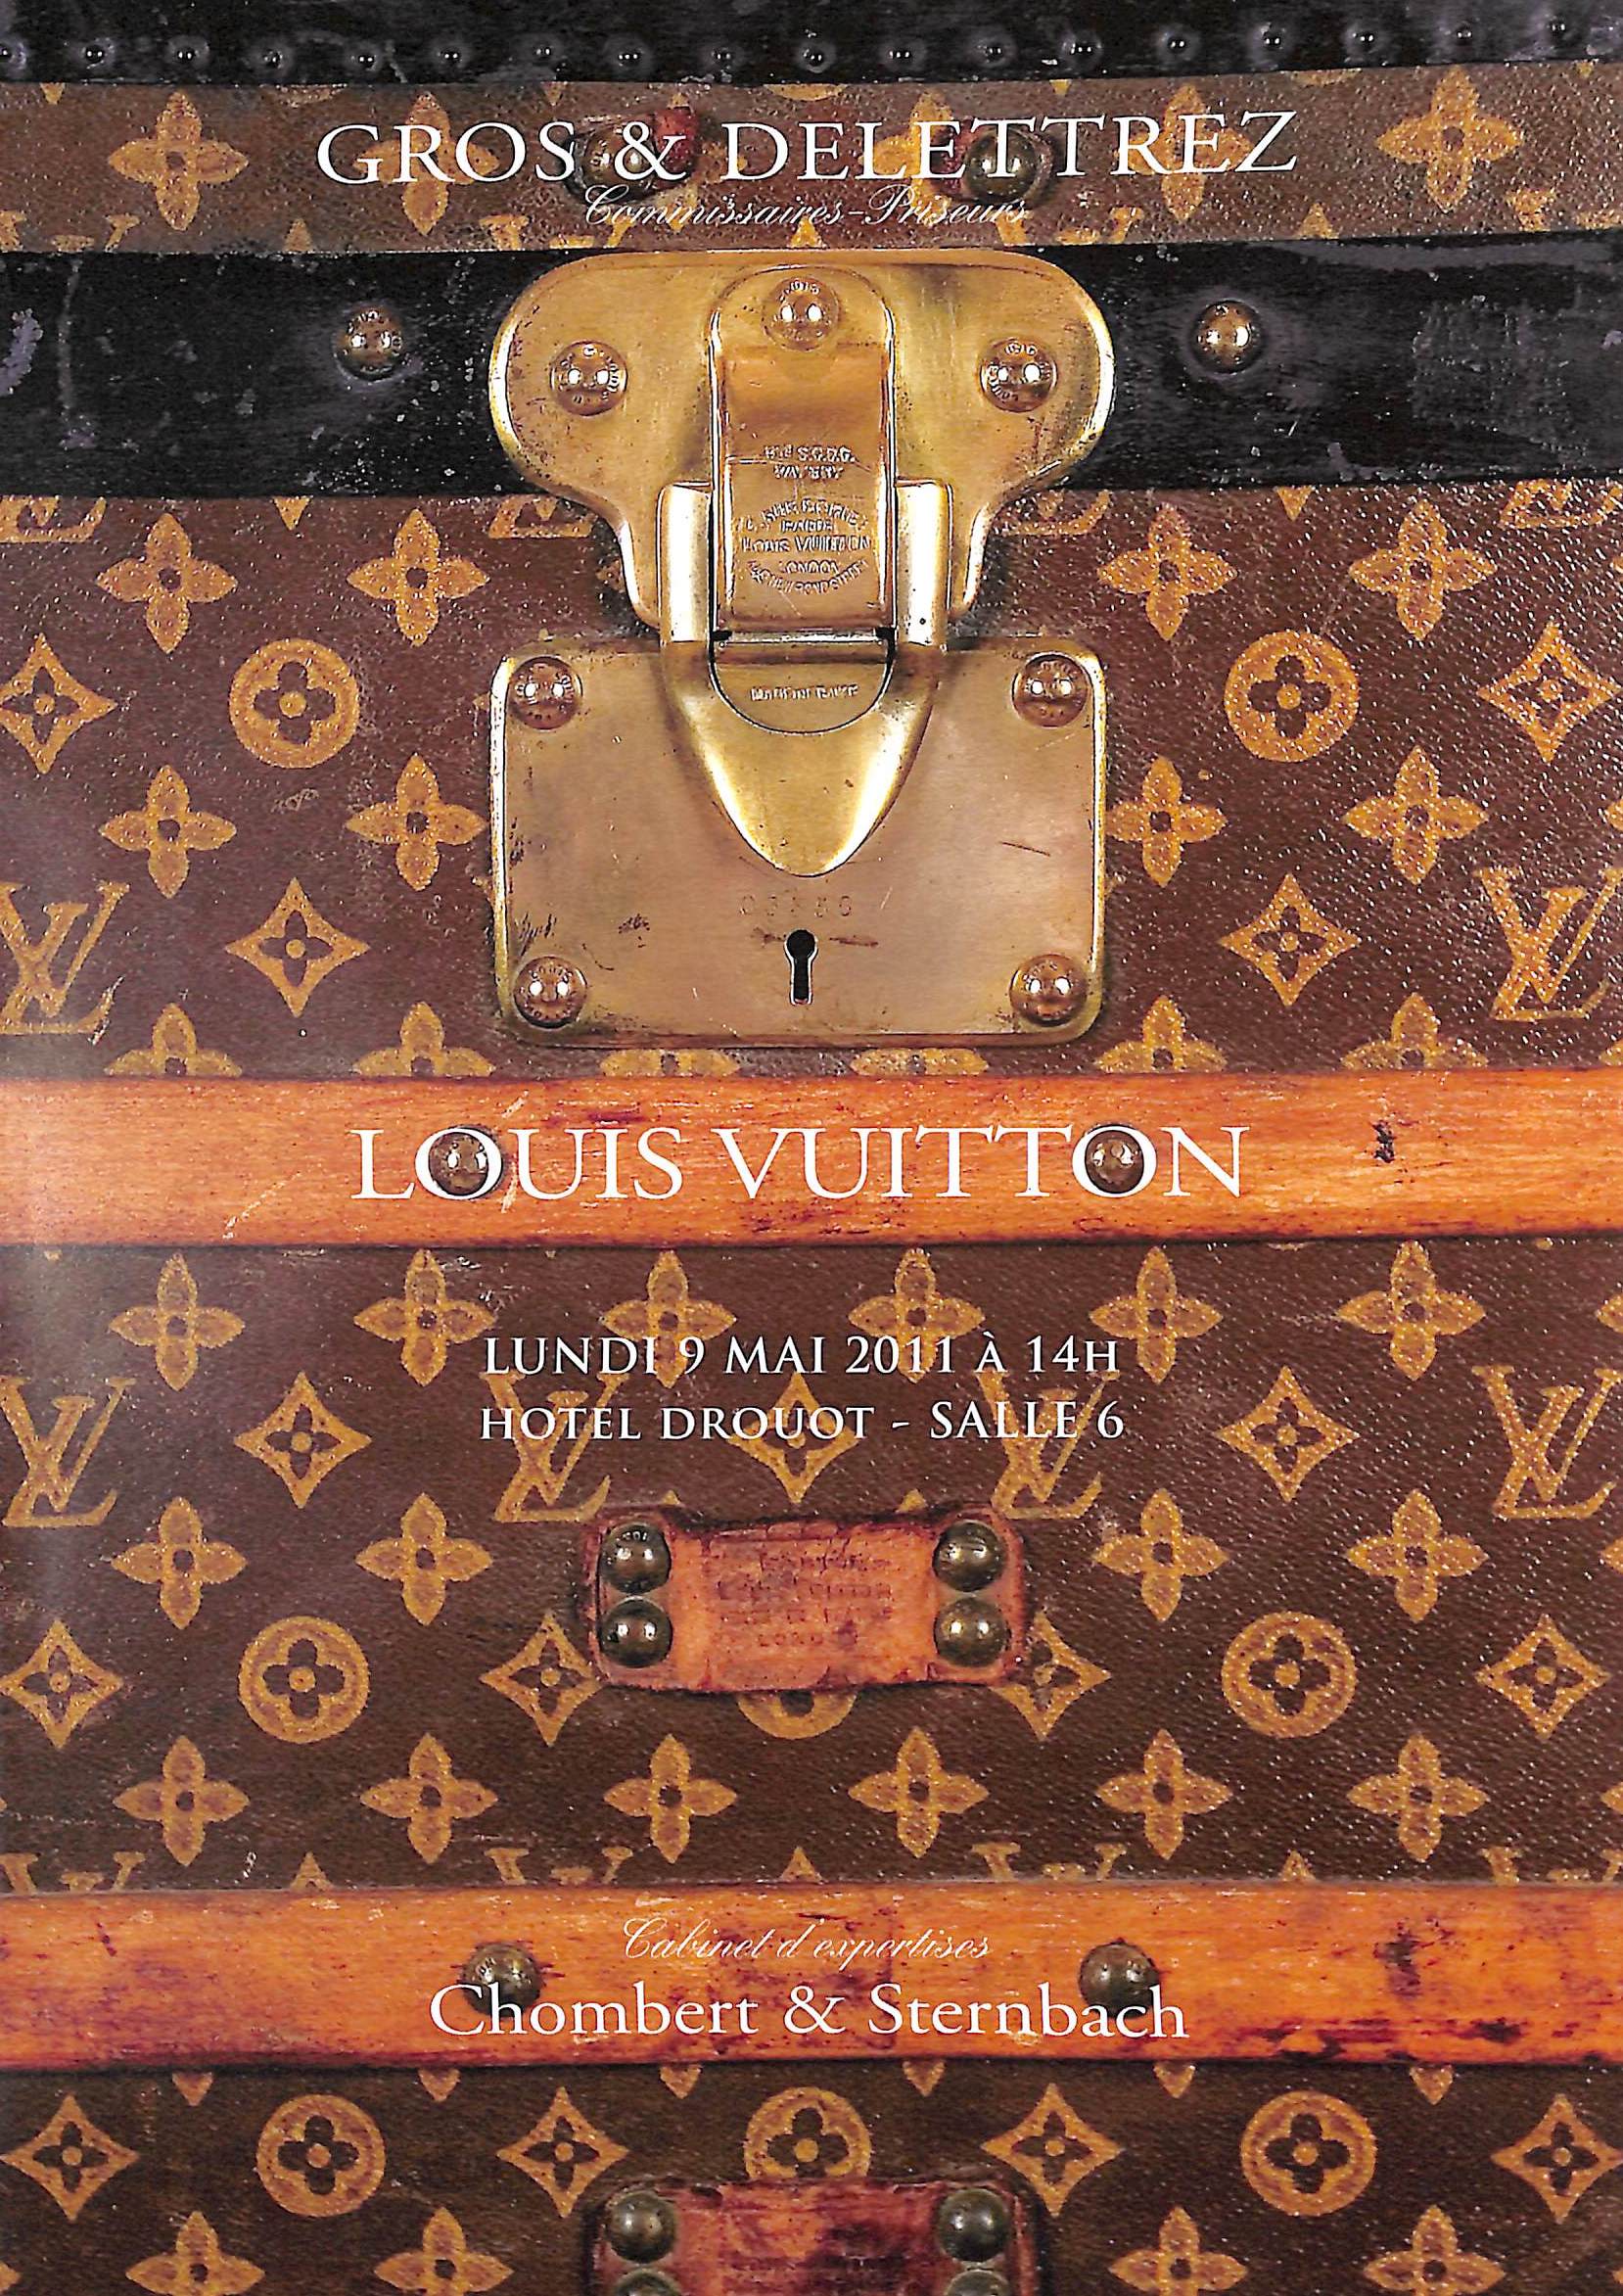 Sold at Auction: Louis Vuitton, Louis Vuitton - Since 1854